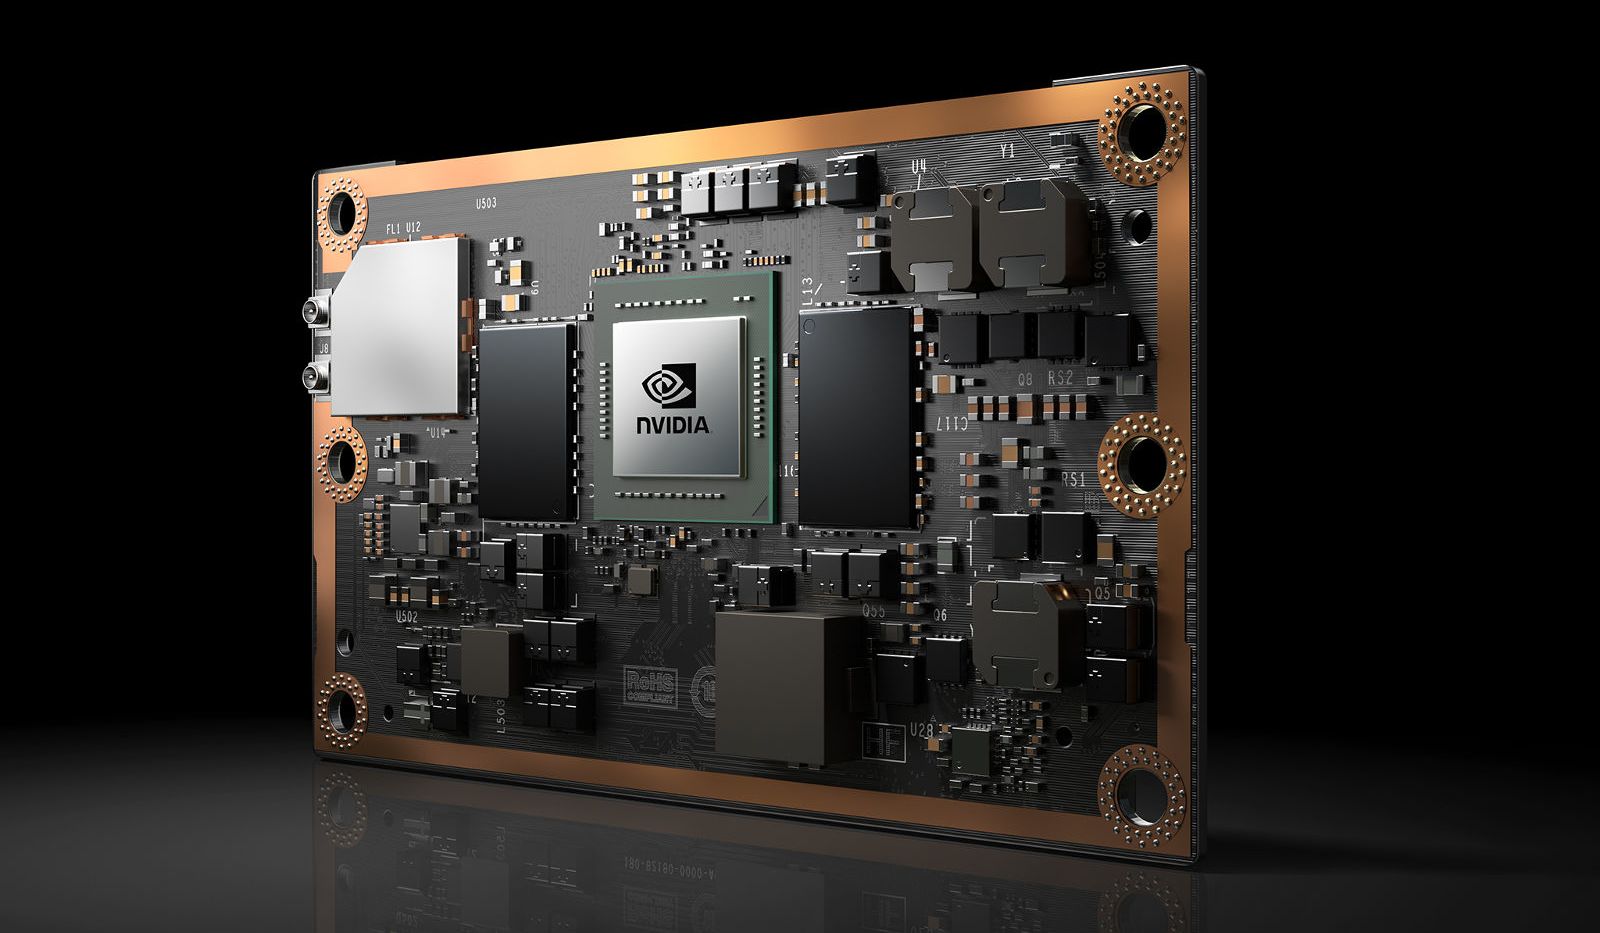 NVIDIA introduced Jetson TX2 — tiny supercomputer next generation